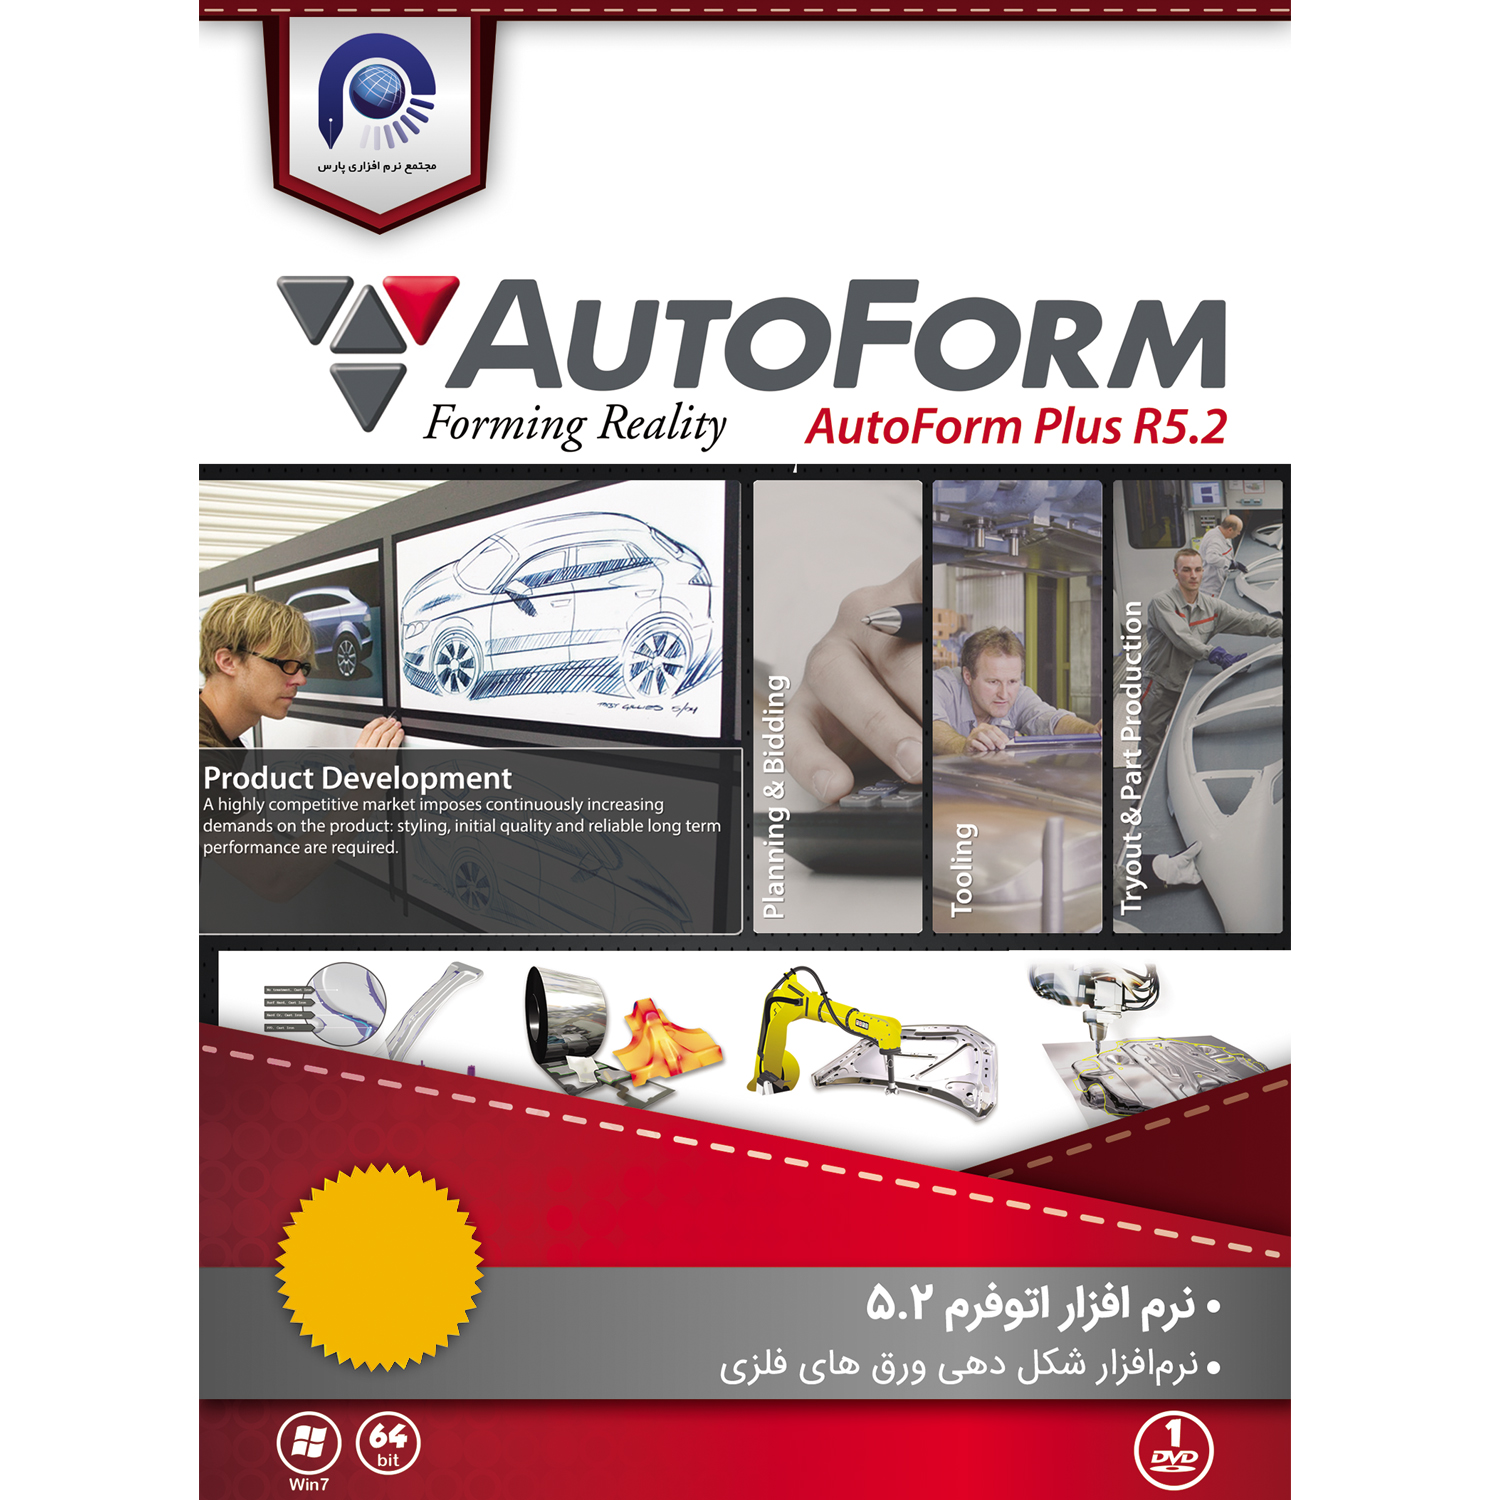 نرم افزار AutoFORM Plus R5.2 نشر مجتمع نرم افزاری پارس